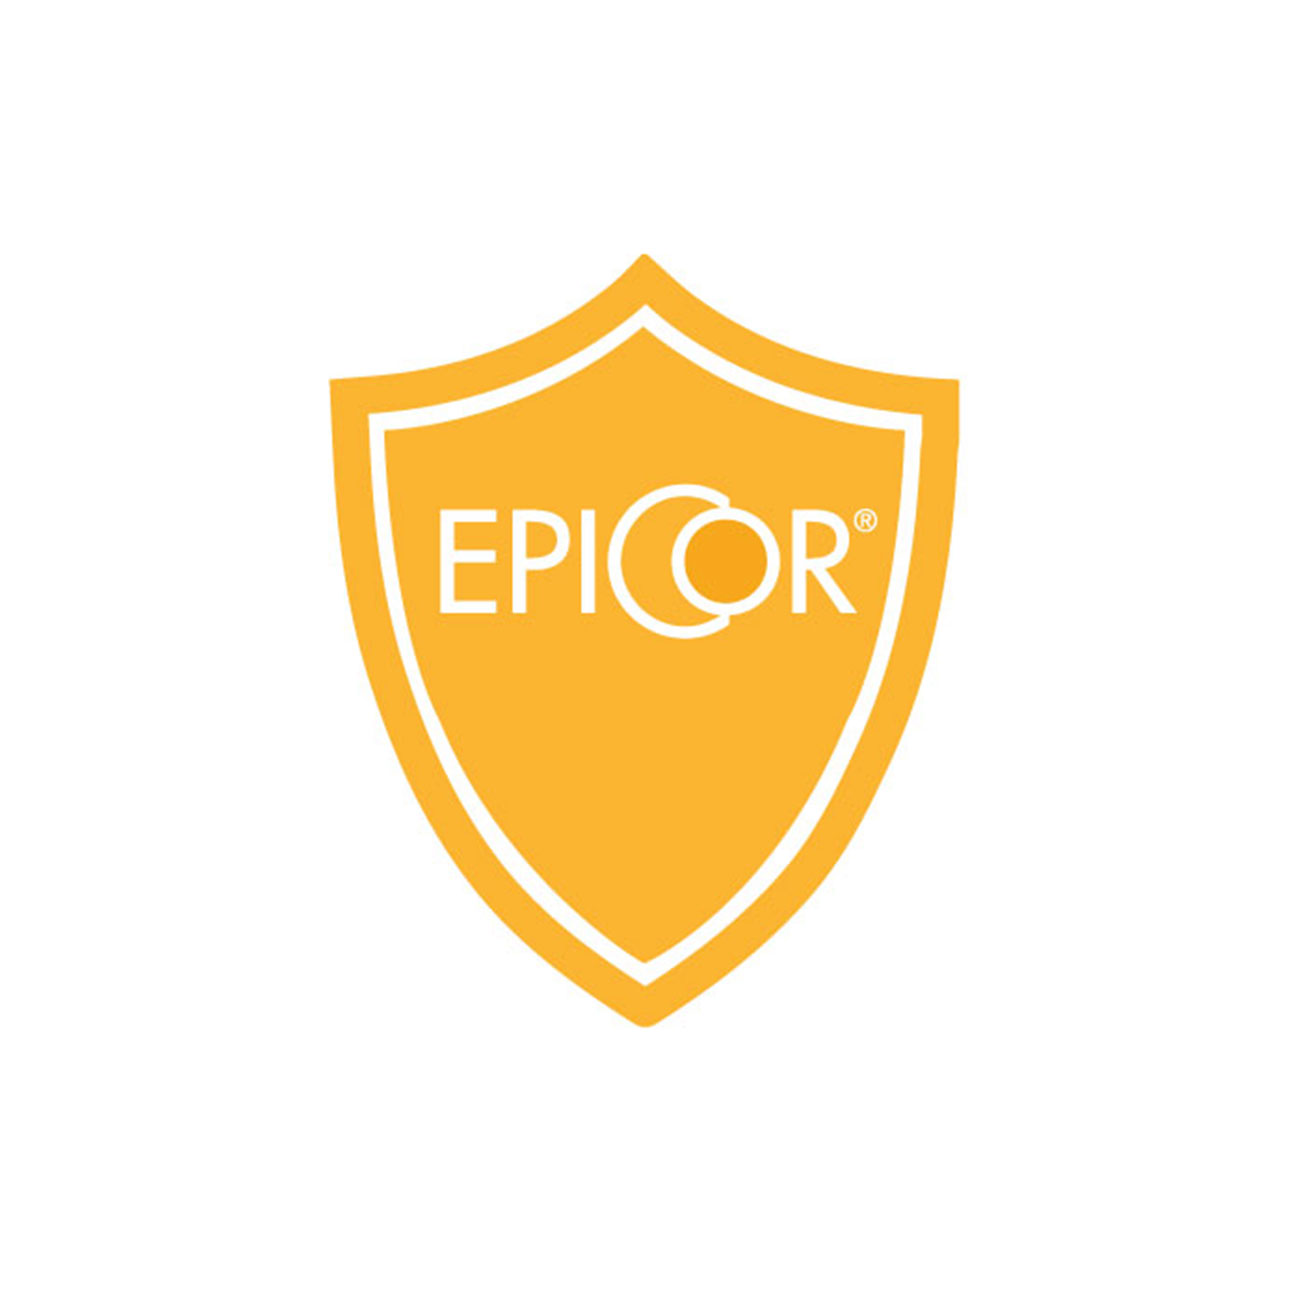 EpiCor® - ravintolisäaine, joka tukee vastustuskykyä –logo